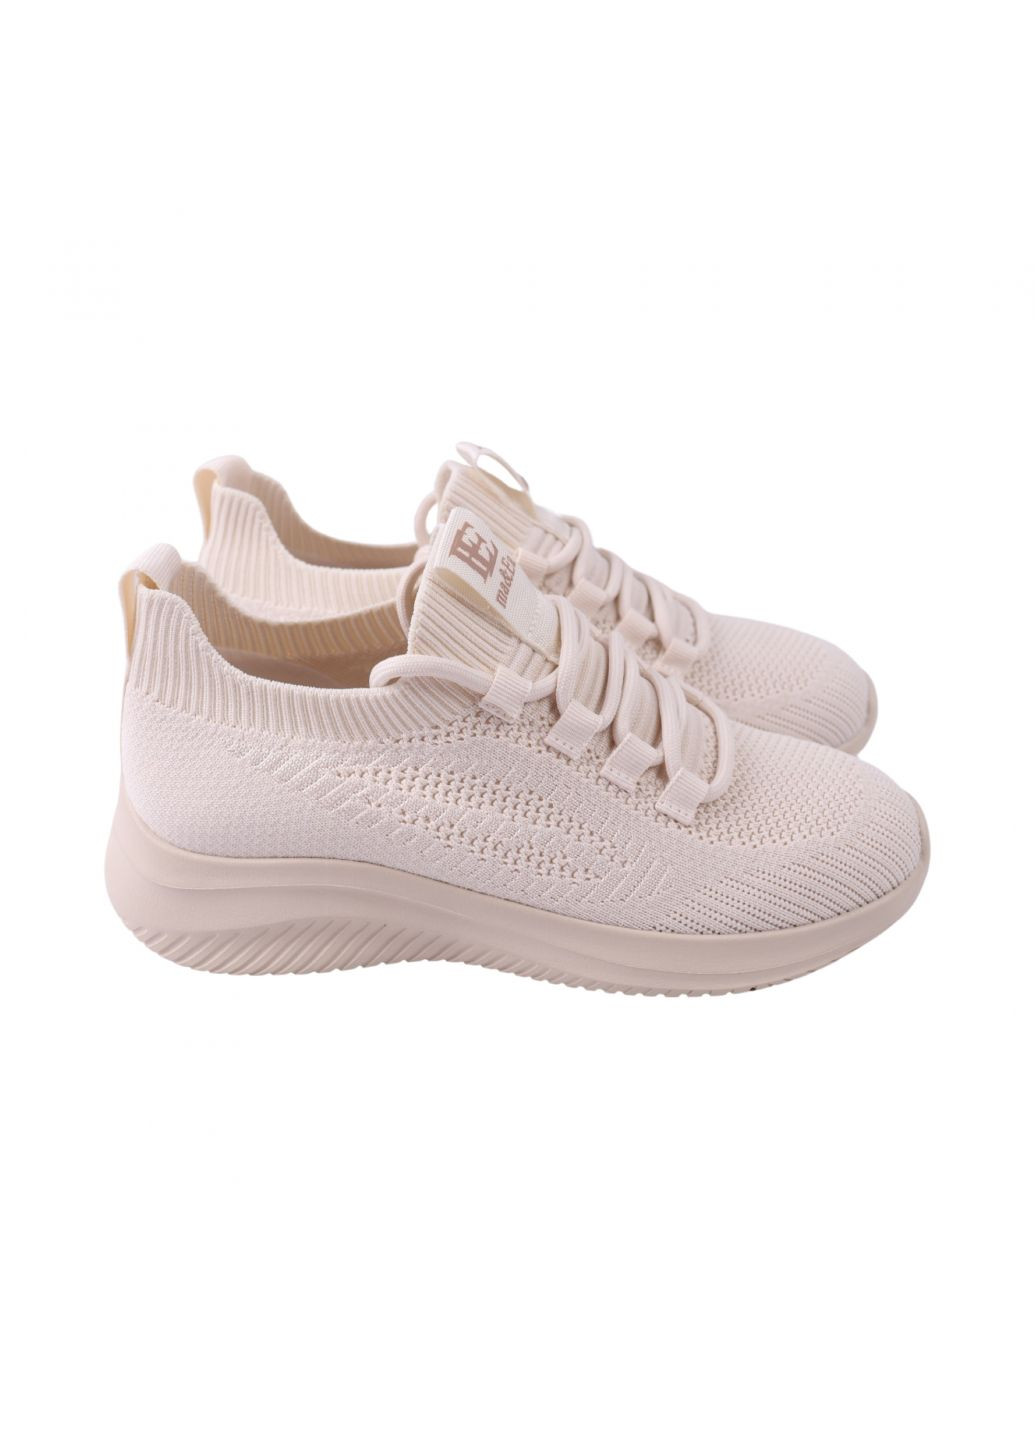 Білі кросівки жіночі молочні текстиль Gelsomino 270-24LK